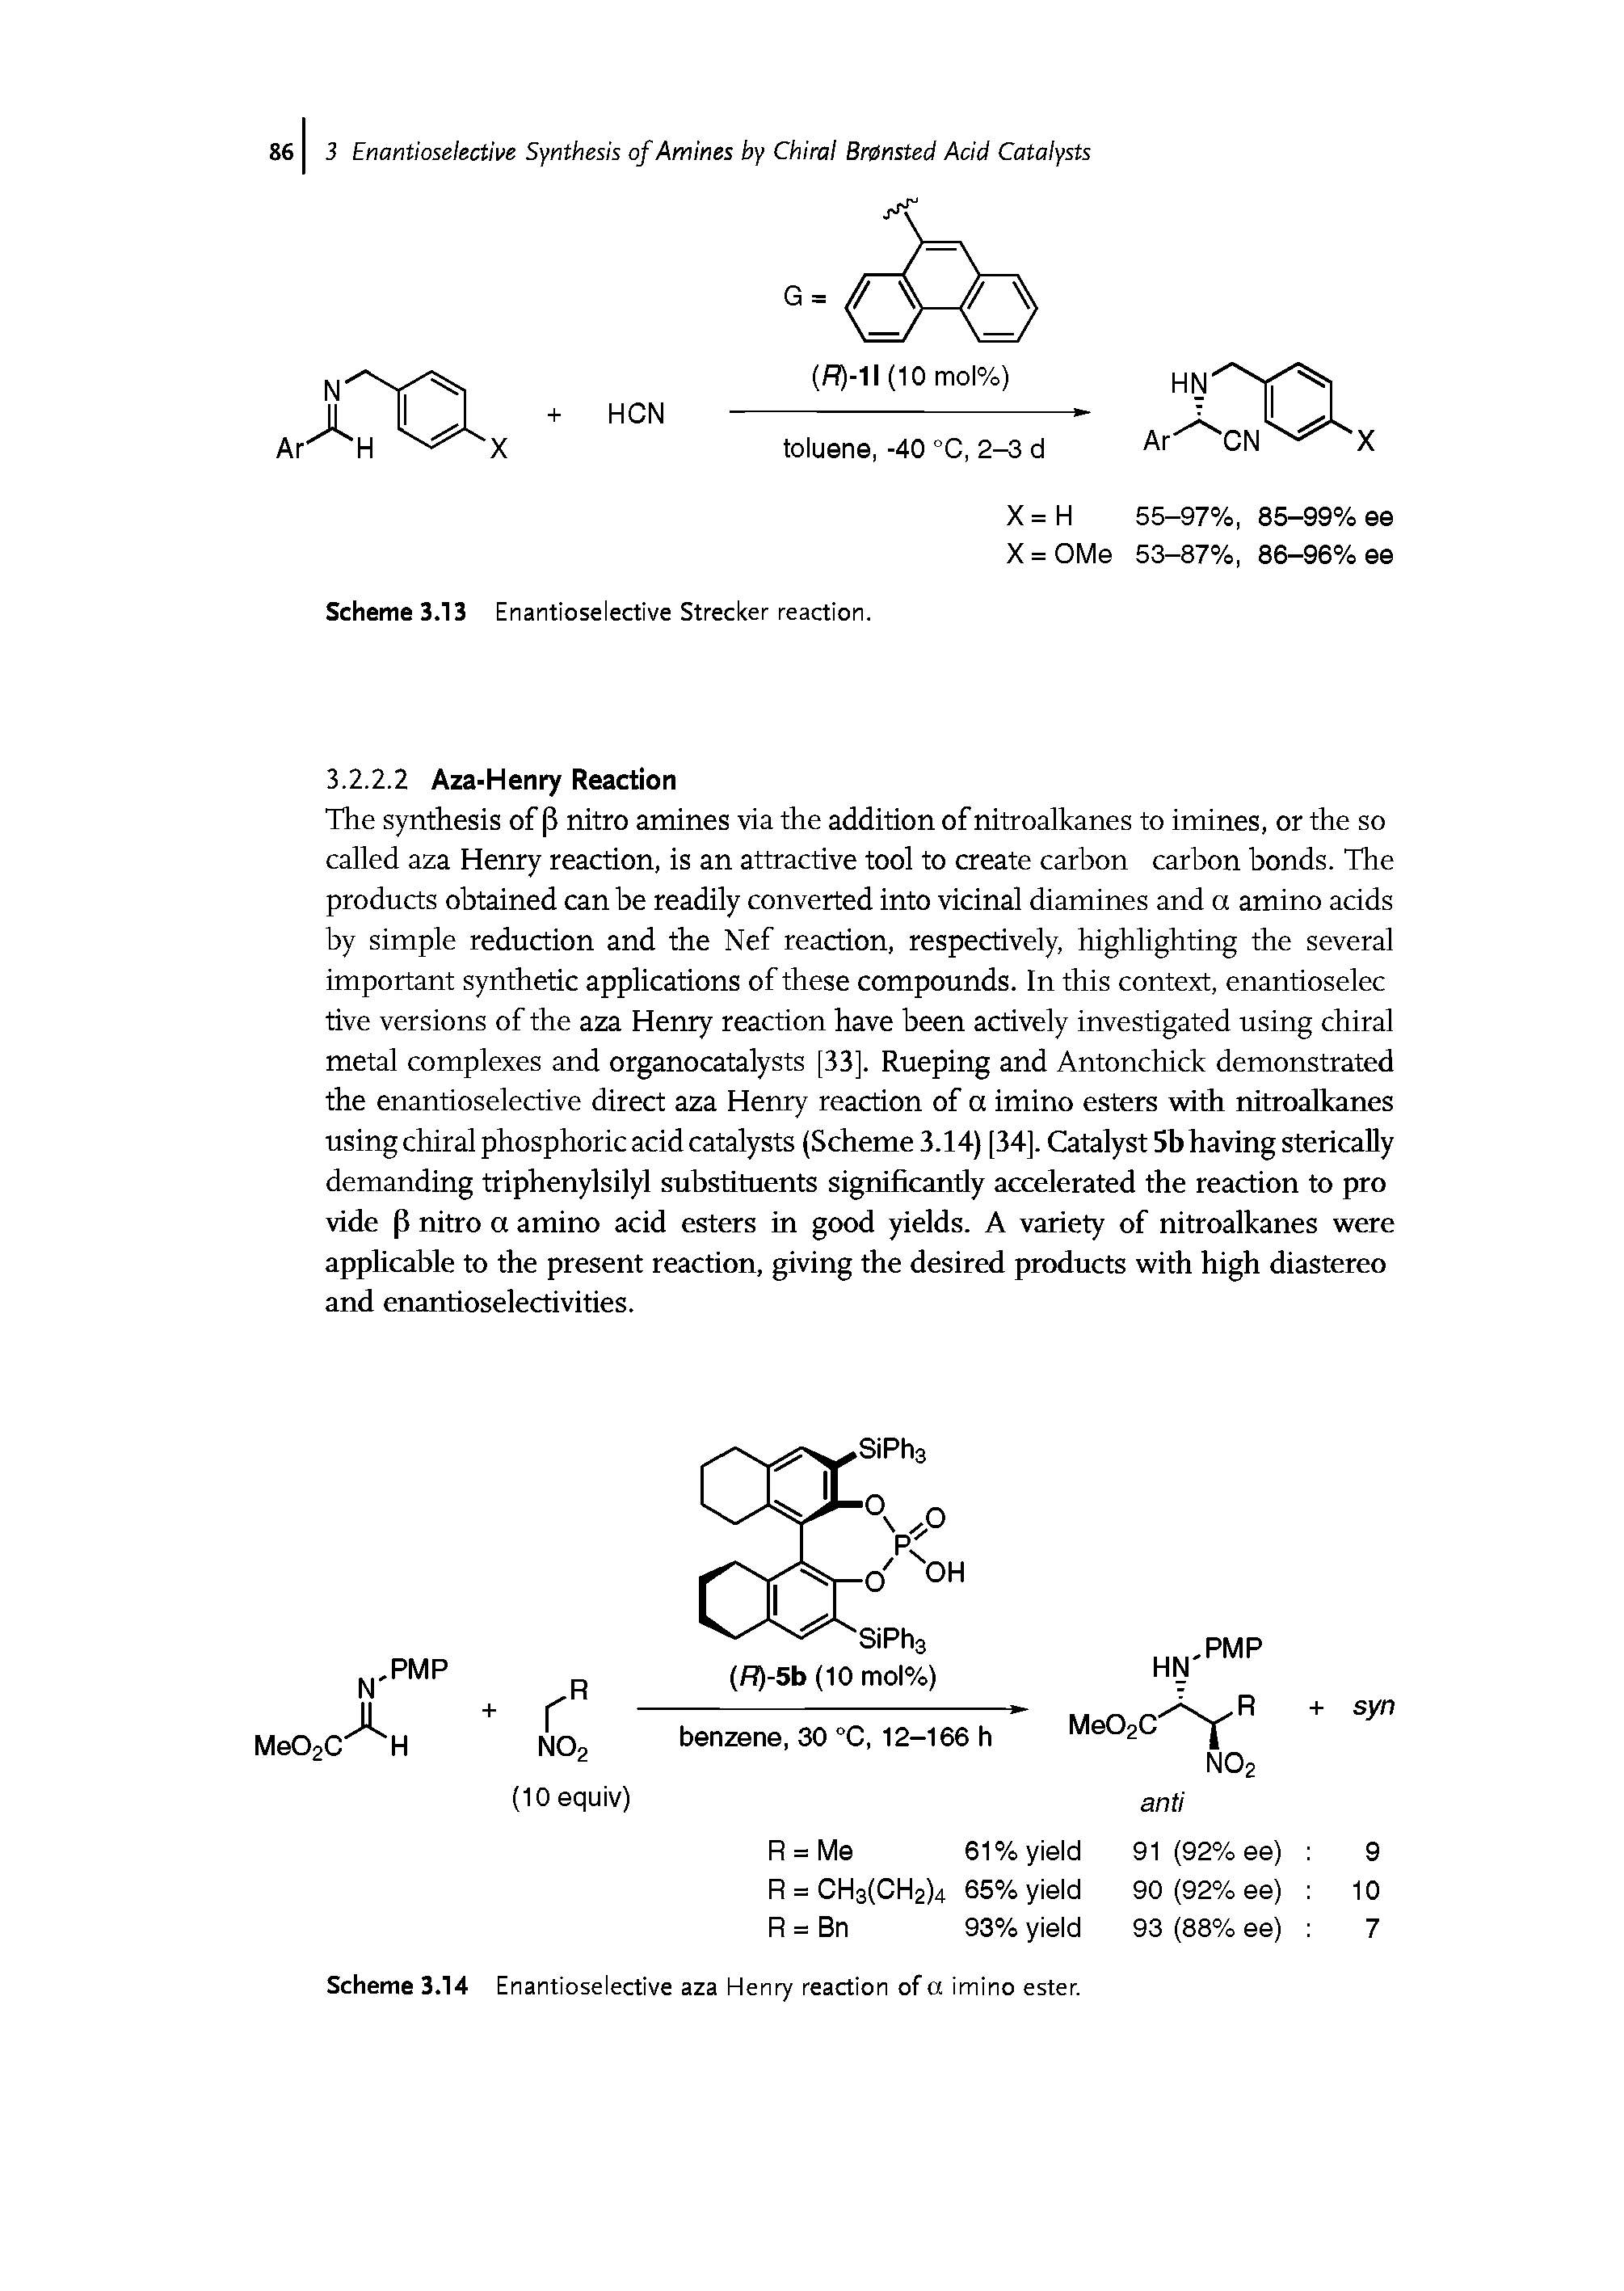 Scheme 3.14 Enantioselective aza Henry reaction of a imino ester.